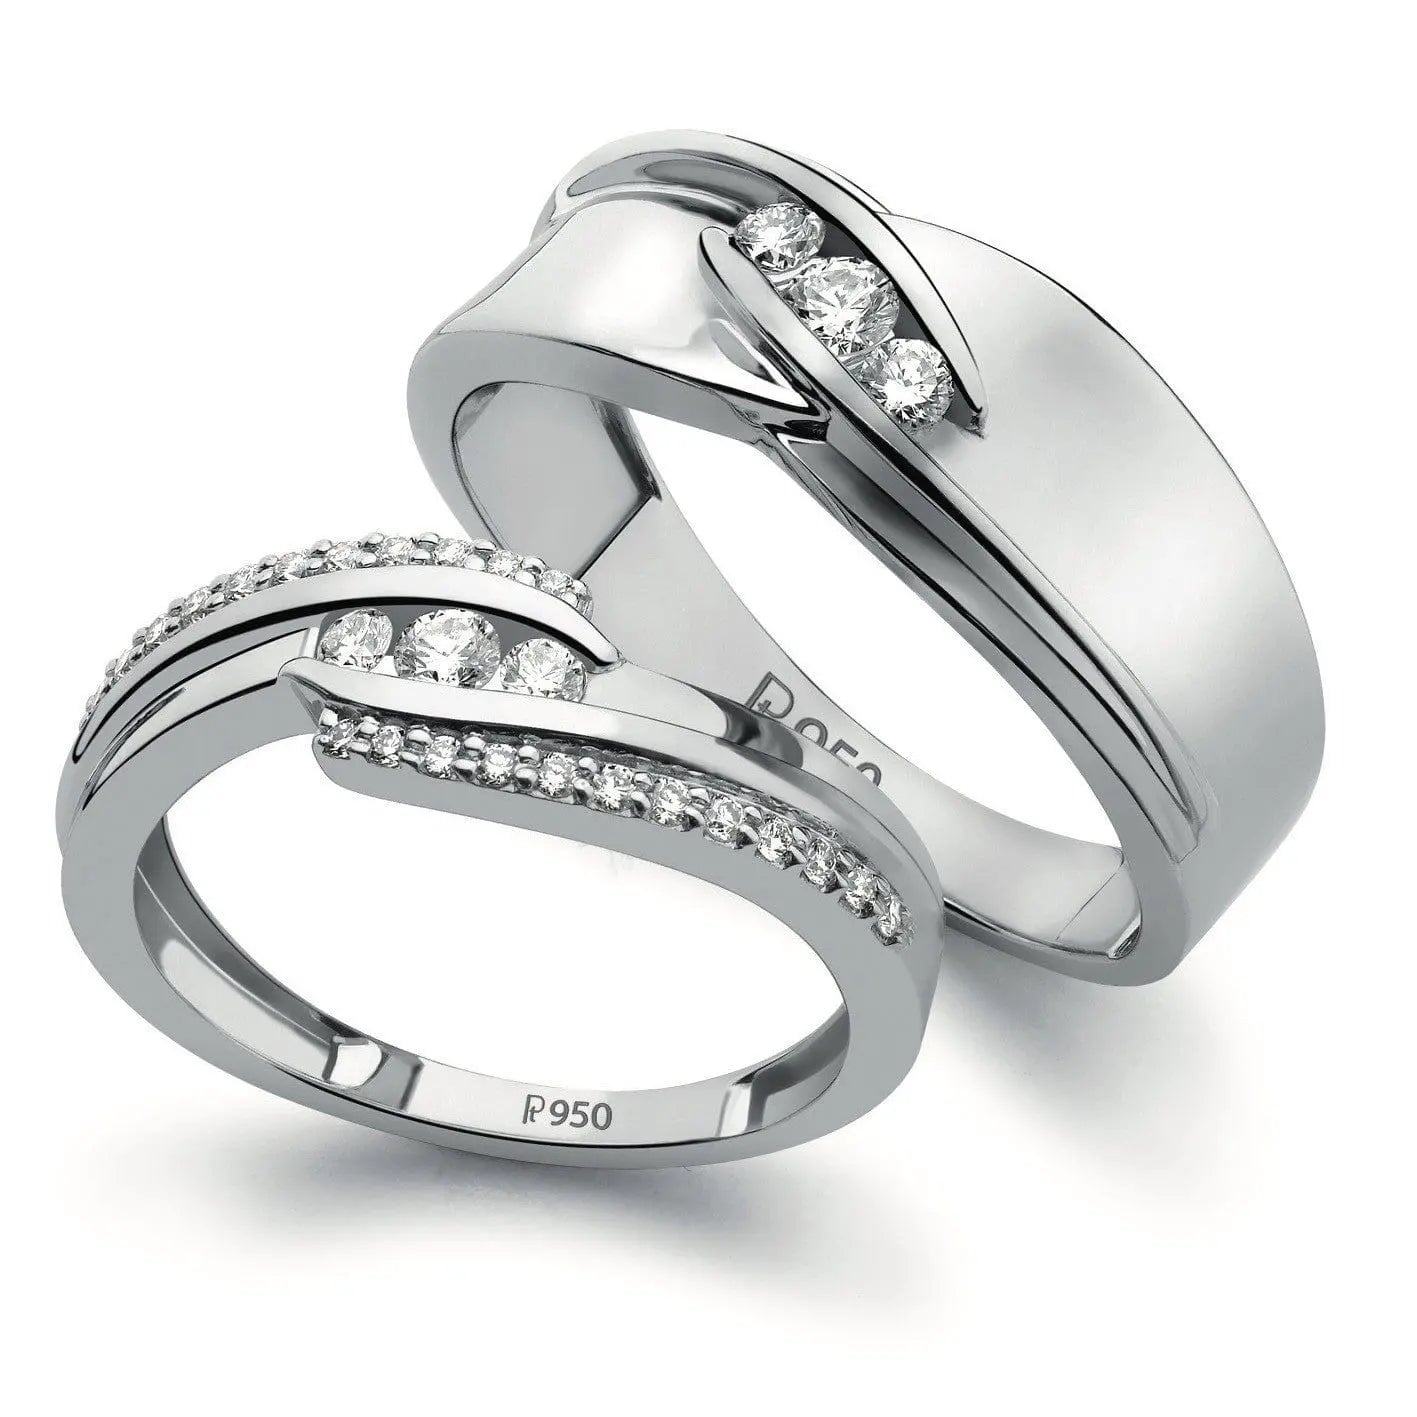 Infinity Platinum Ring with 2 Diamonds SJ PTO 294